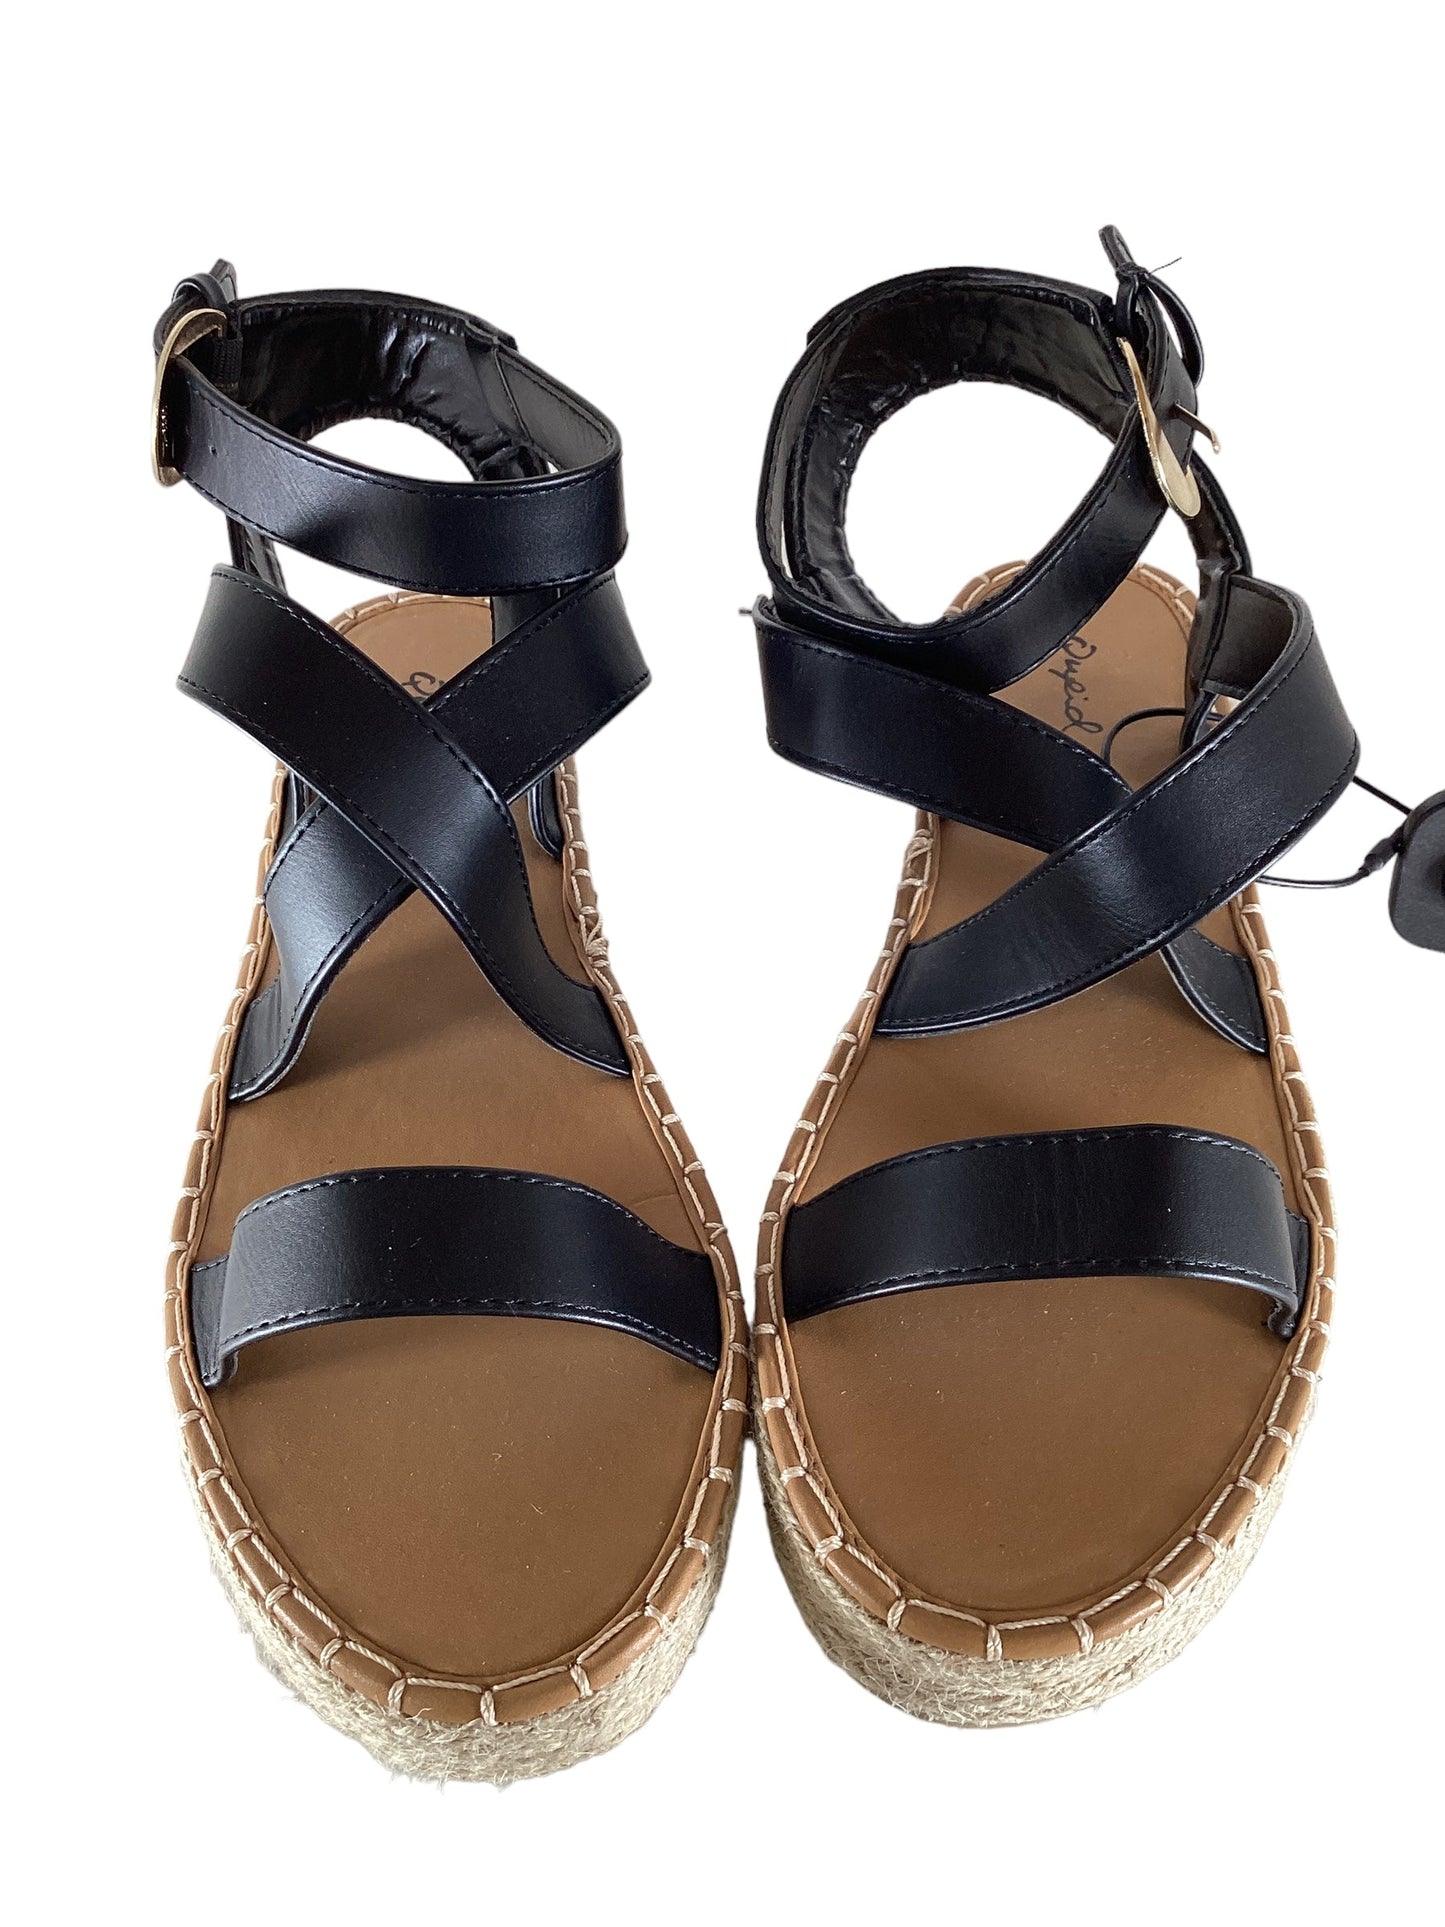 Black Sandals Flats Qupid, Size 8